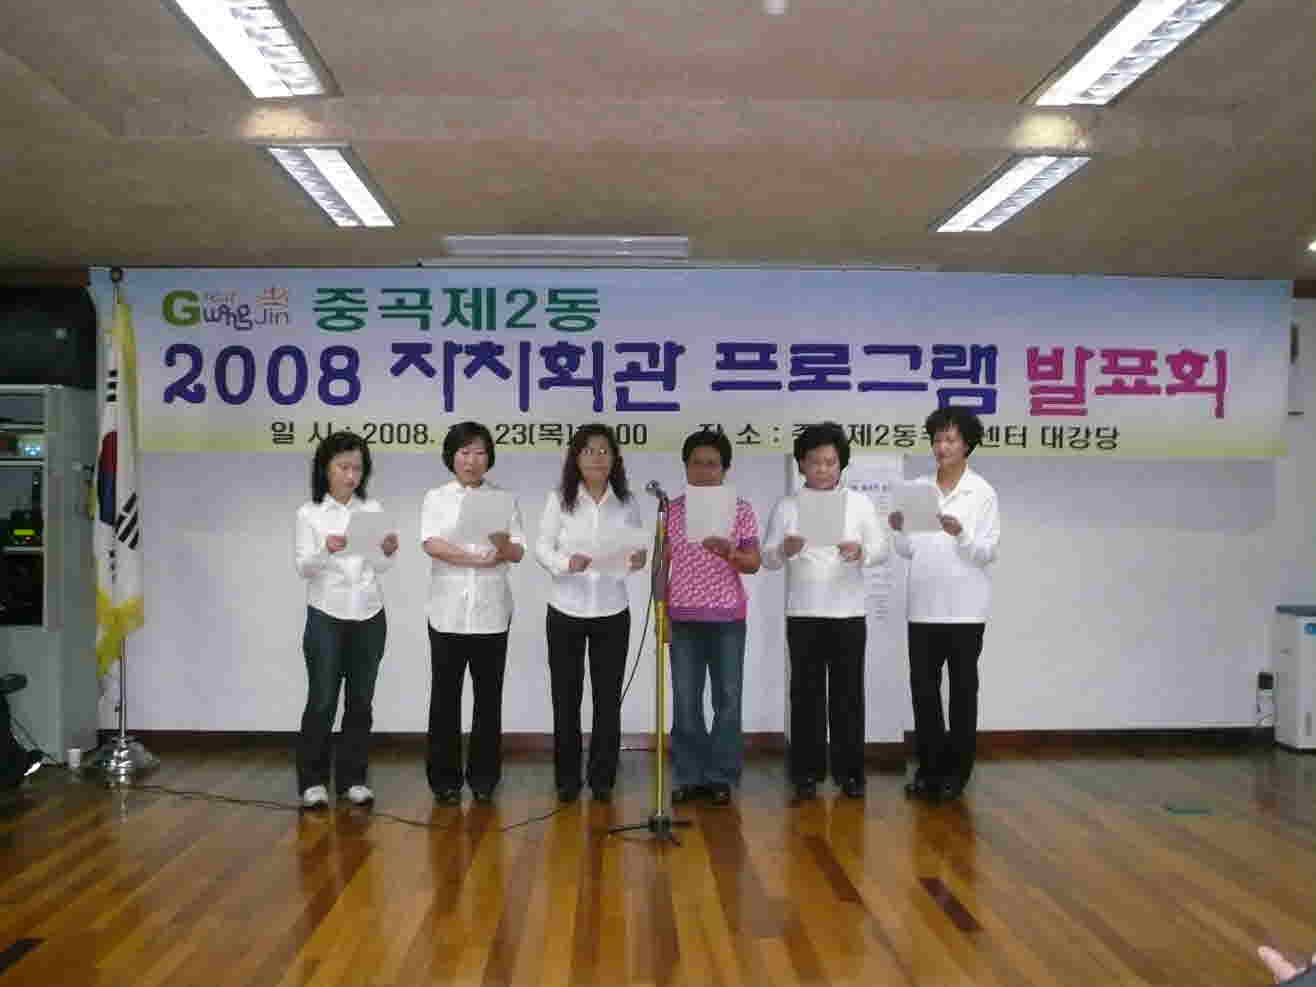 중곡2동 자치회관 발표회(2008.10.23) -노래교실(합창) 20081026JPG16083701.JPG